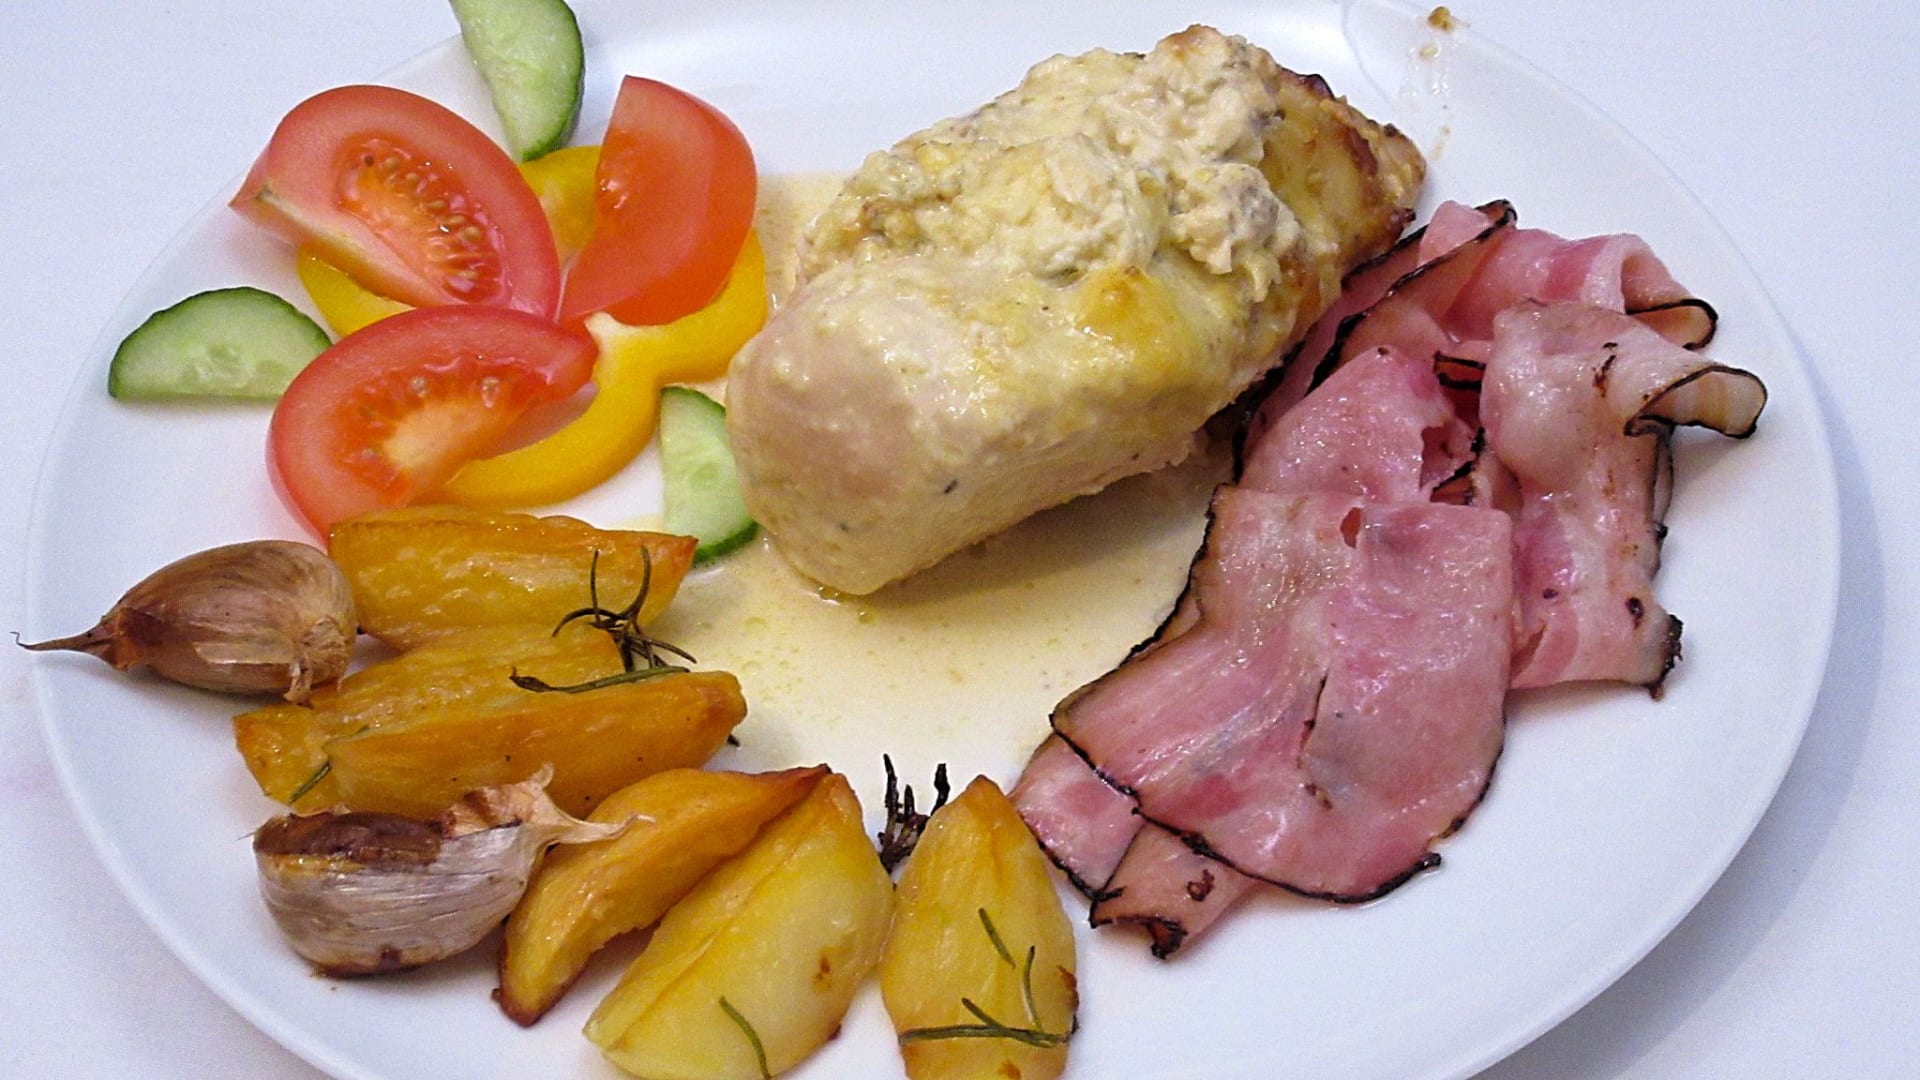 Kuřecí prsa v majonéze s nivou a opečenou slaninou, opečené brambory s česnekem a rozmarýnem